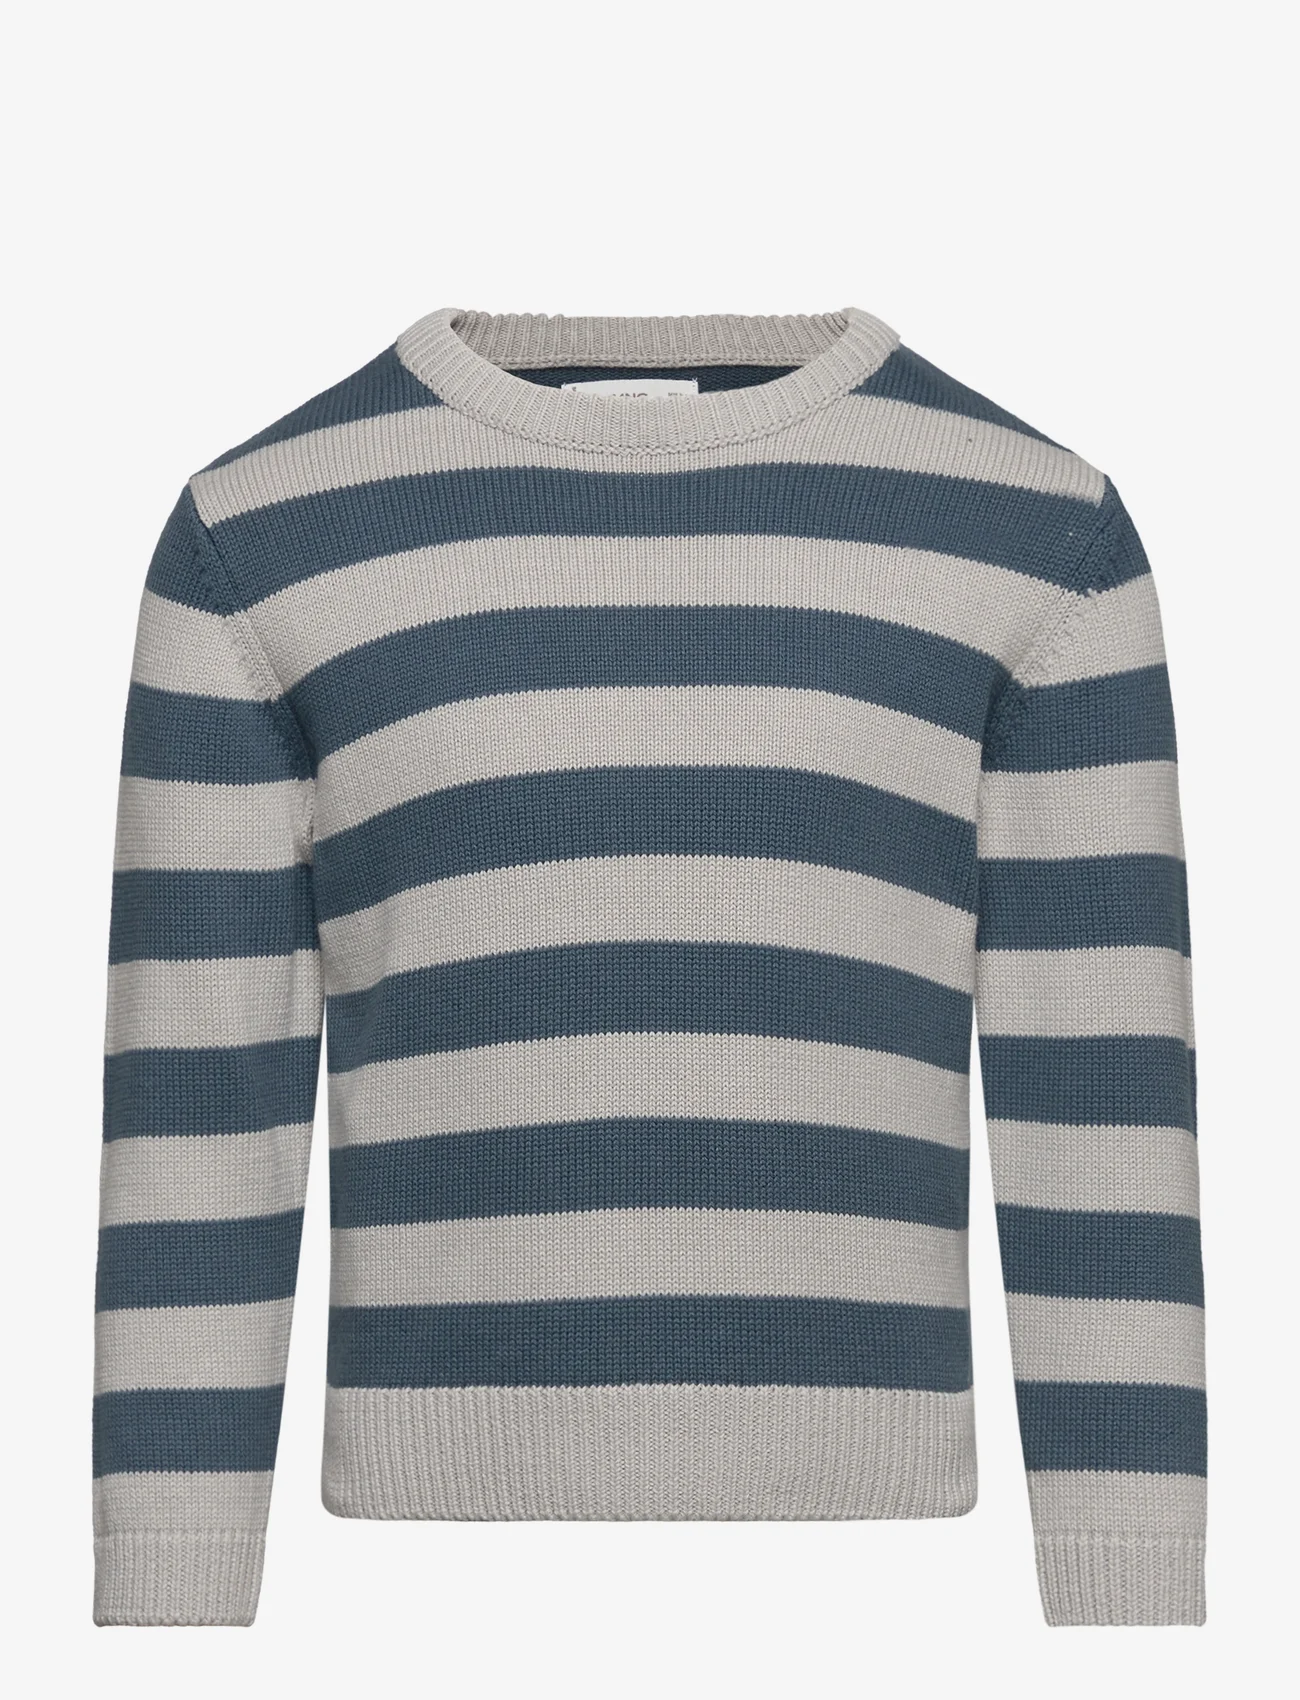 Mango - Striped knit sweater - gensere - dark blue - 0